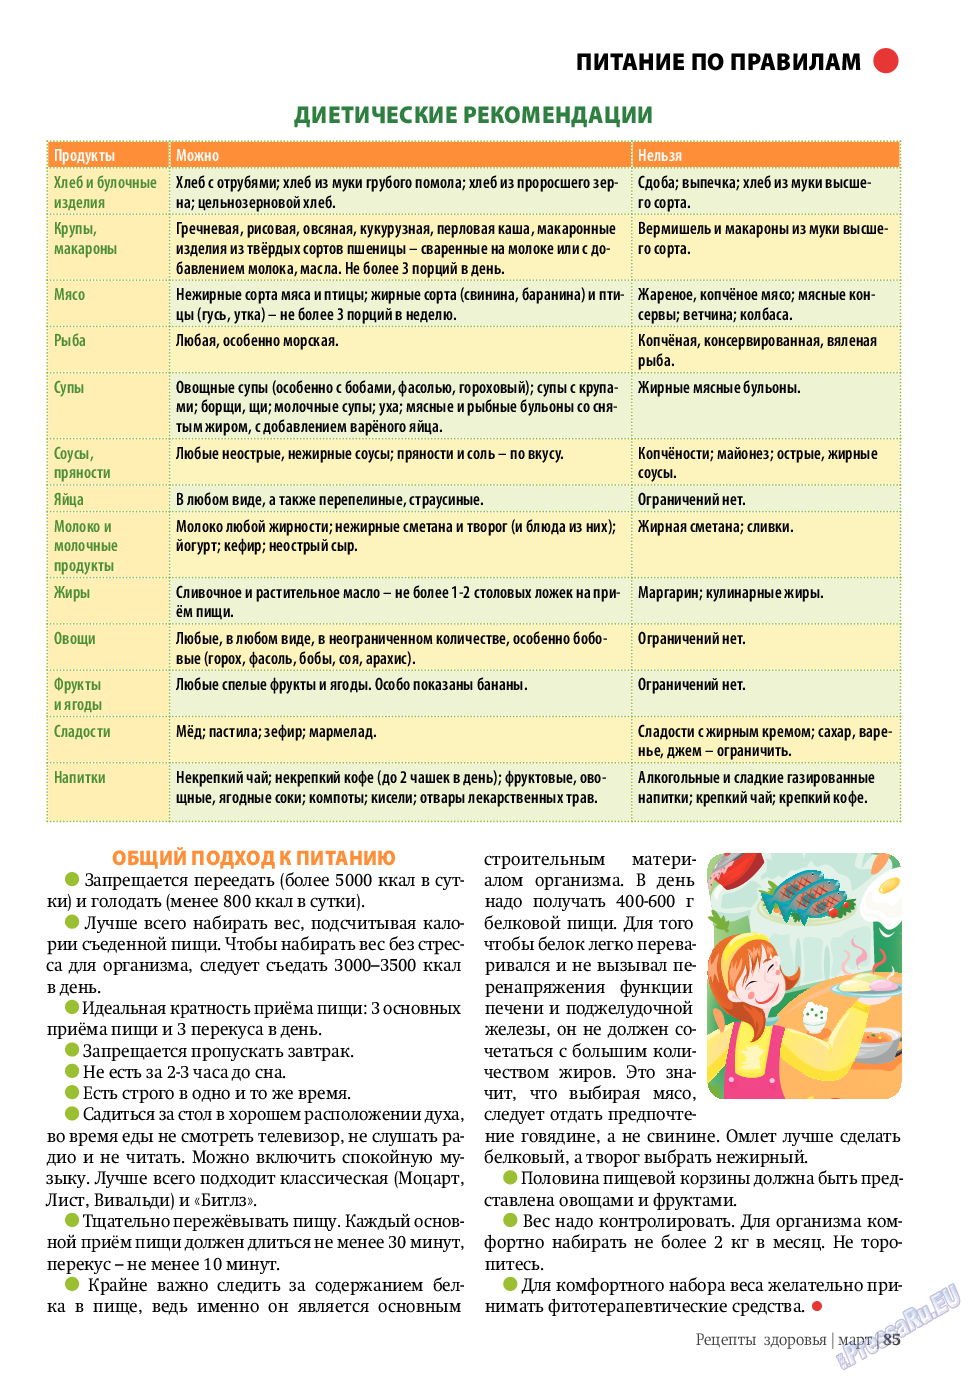 Рецепты здоровья, журнал. 2011 №3 стр.85